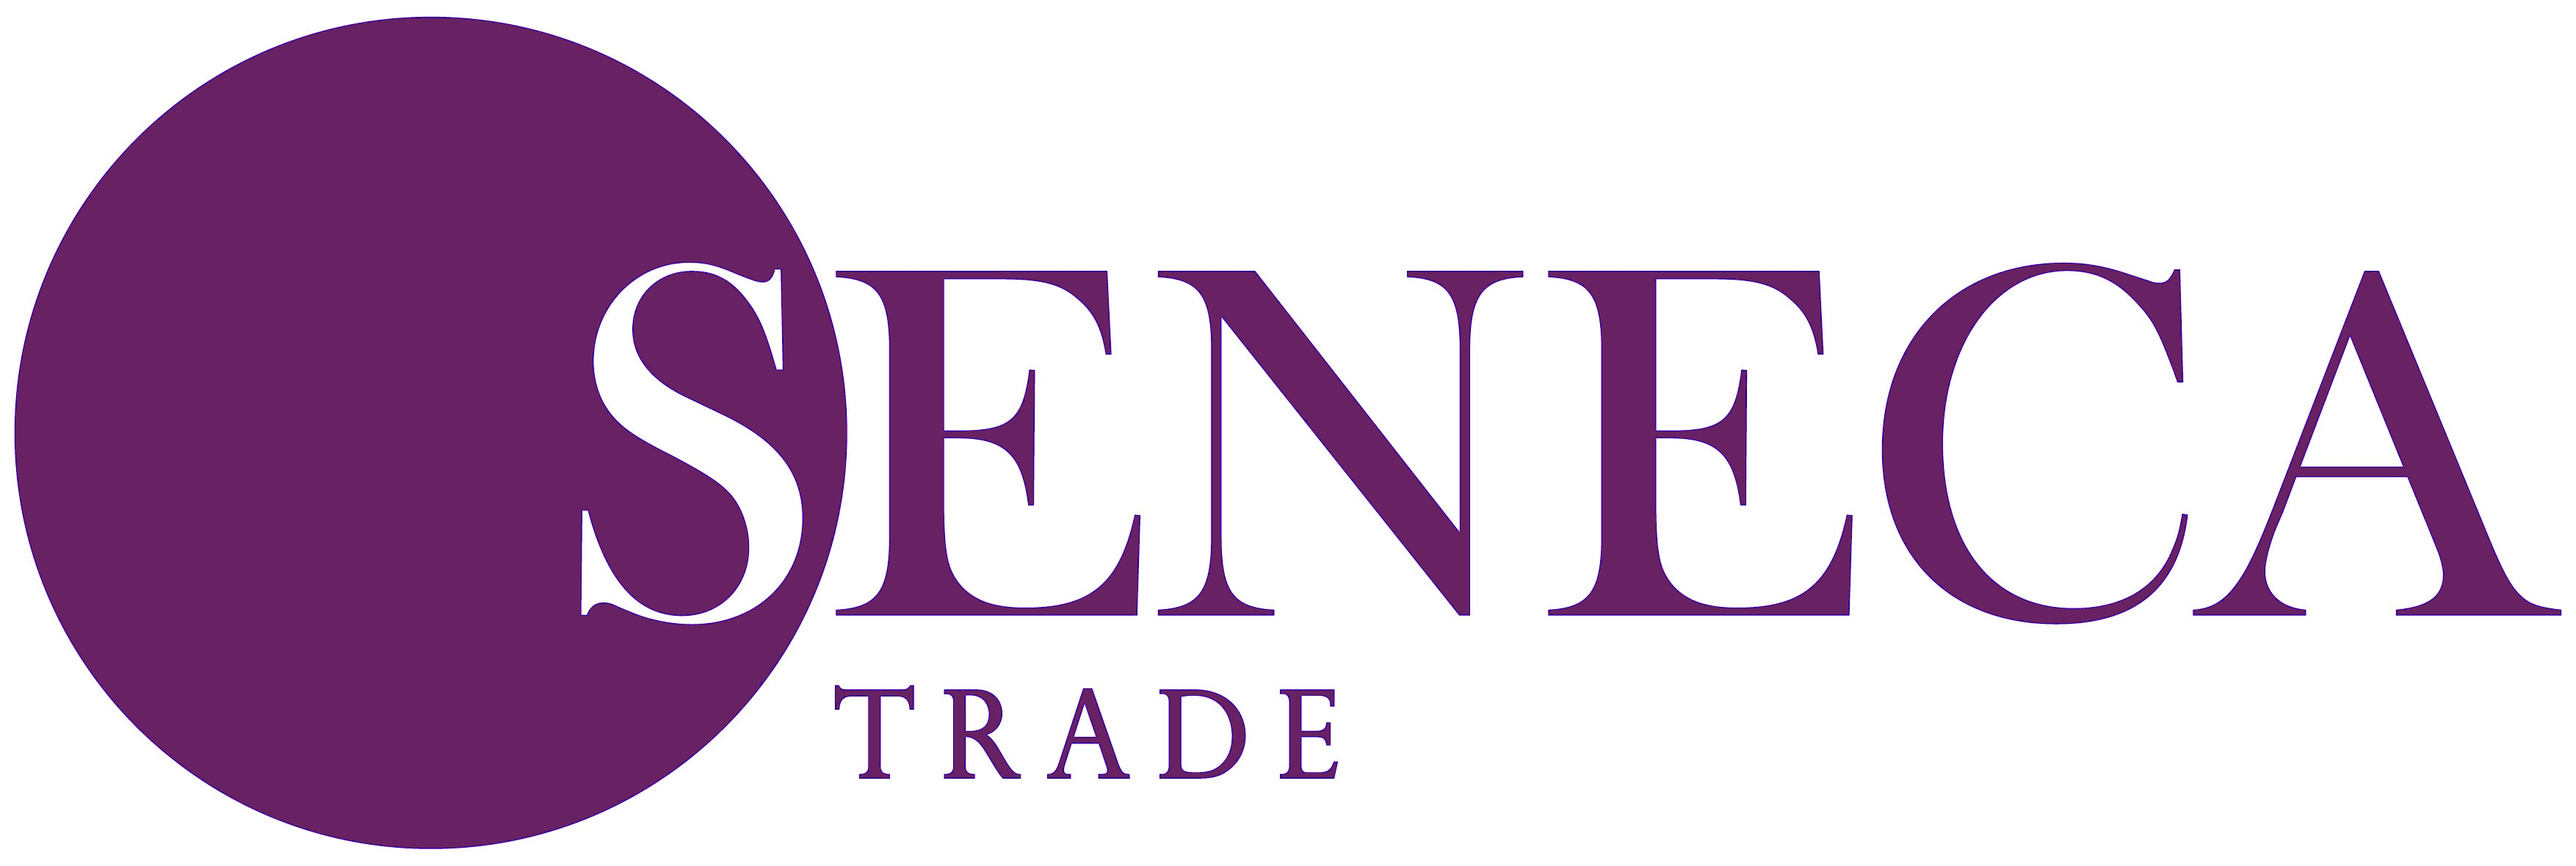 Seneca Trade Logo